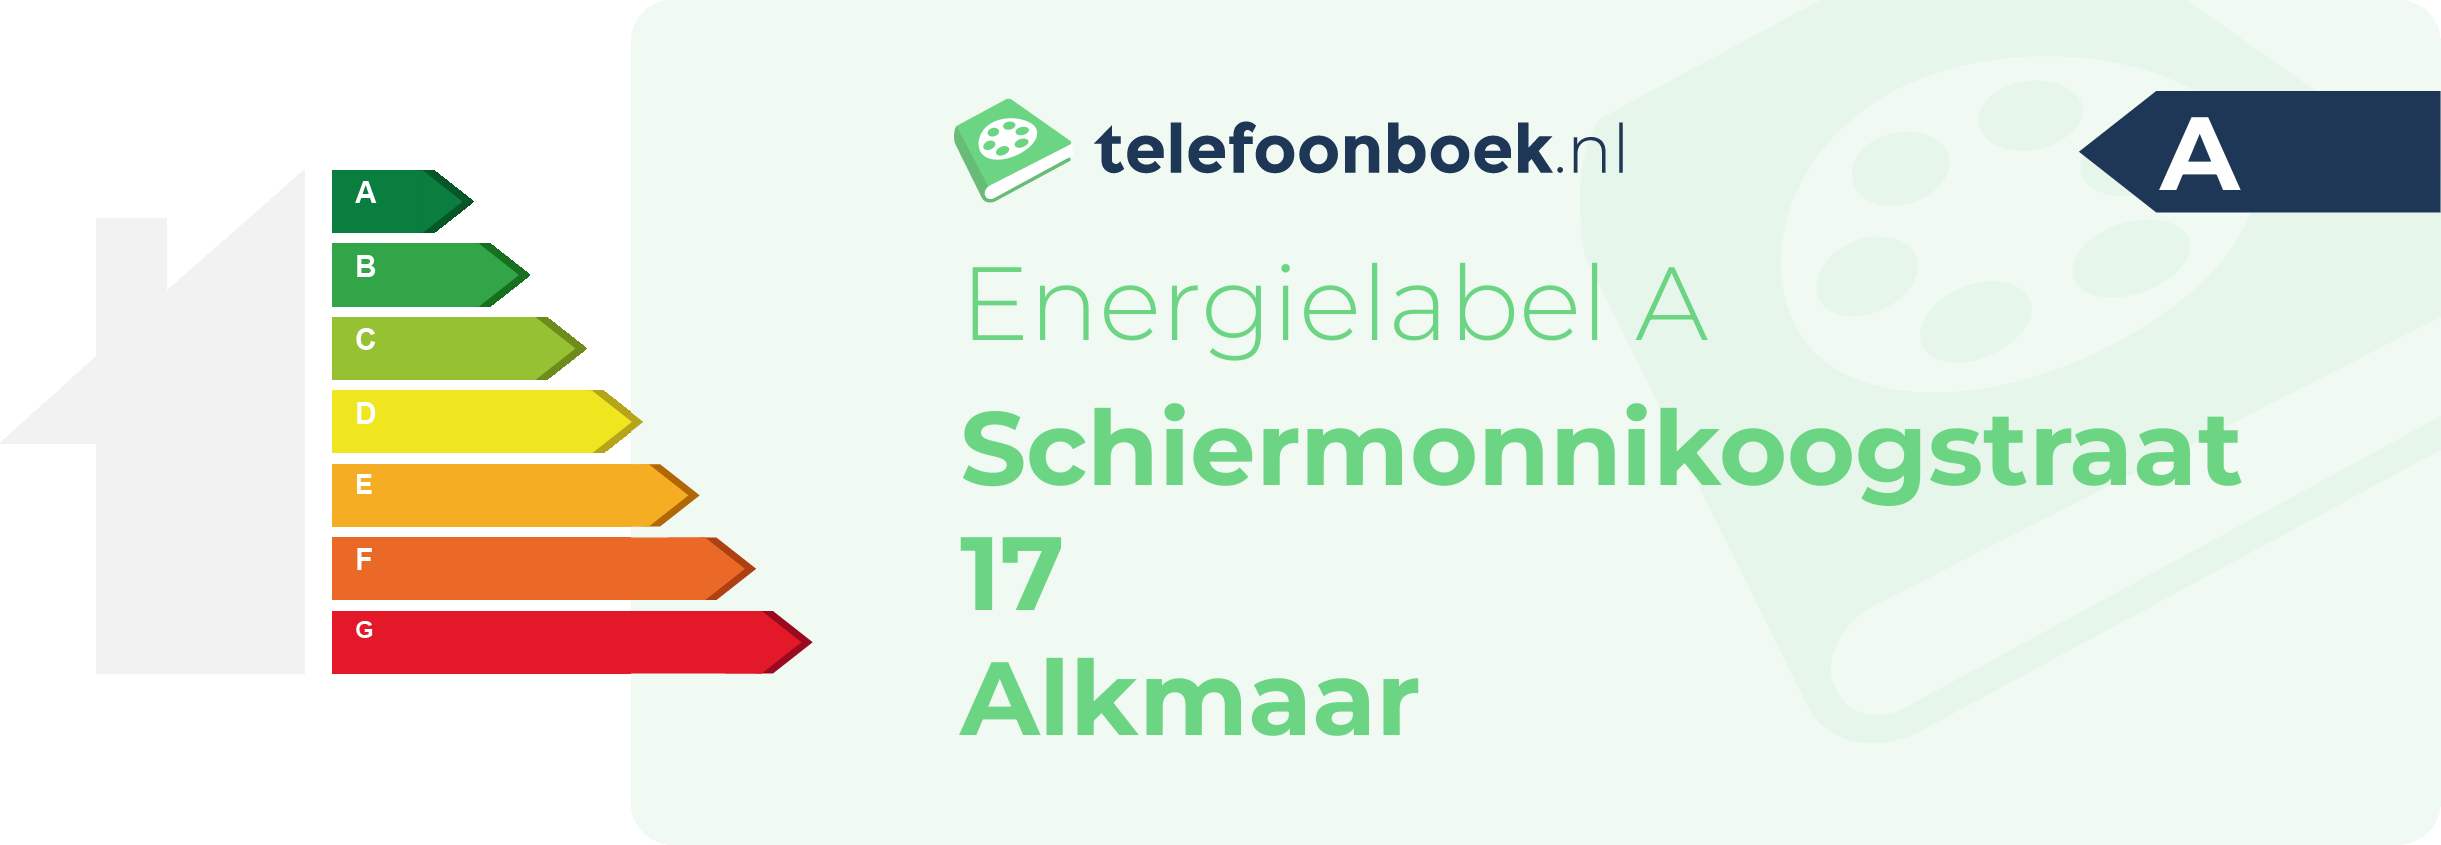 Energielabel Schiermonnikoogstraat 17 Alkmaar